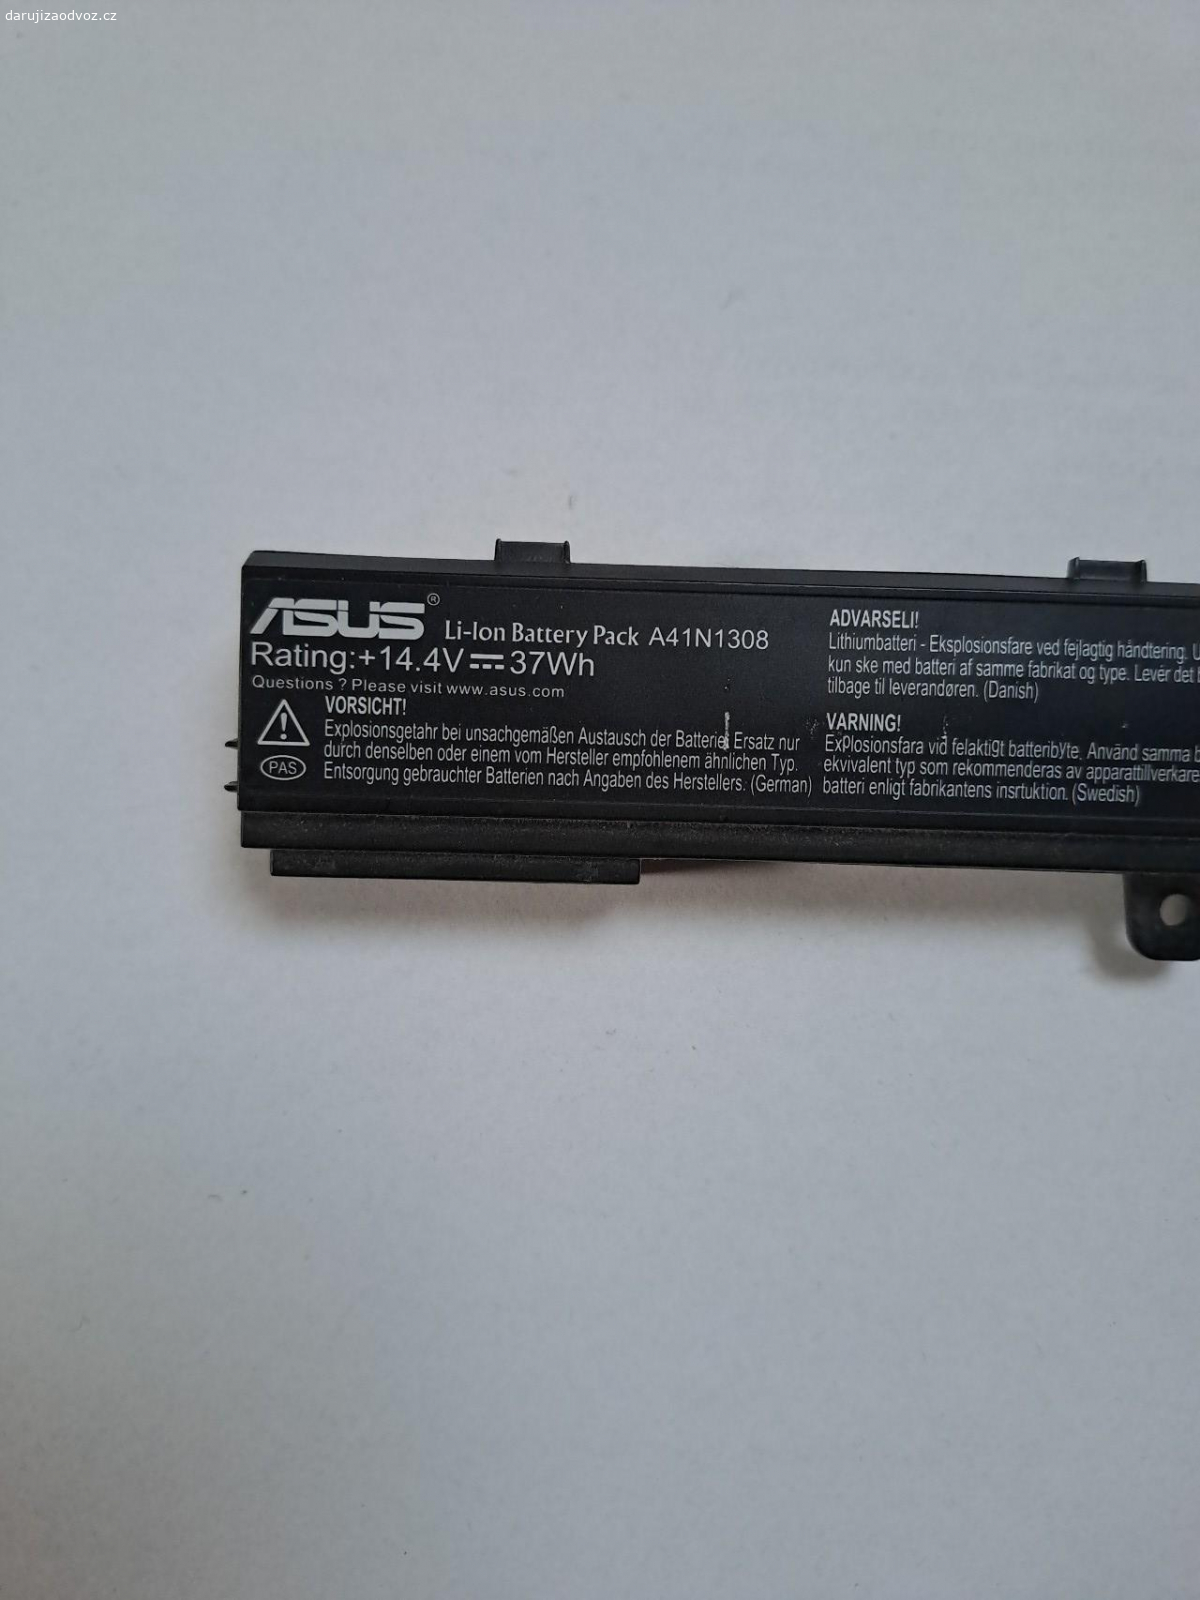 Baterie do ntb Asus. cca rok používaná